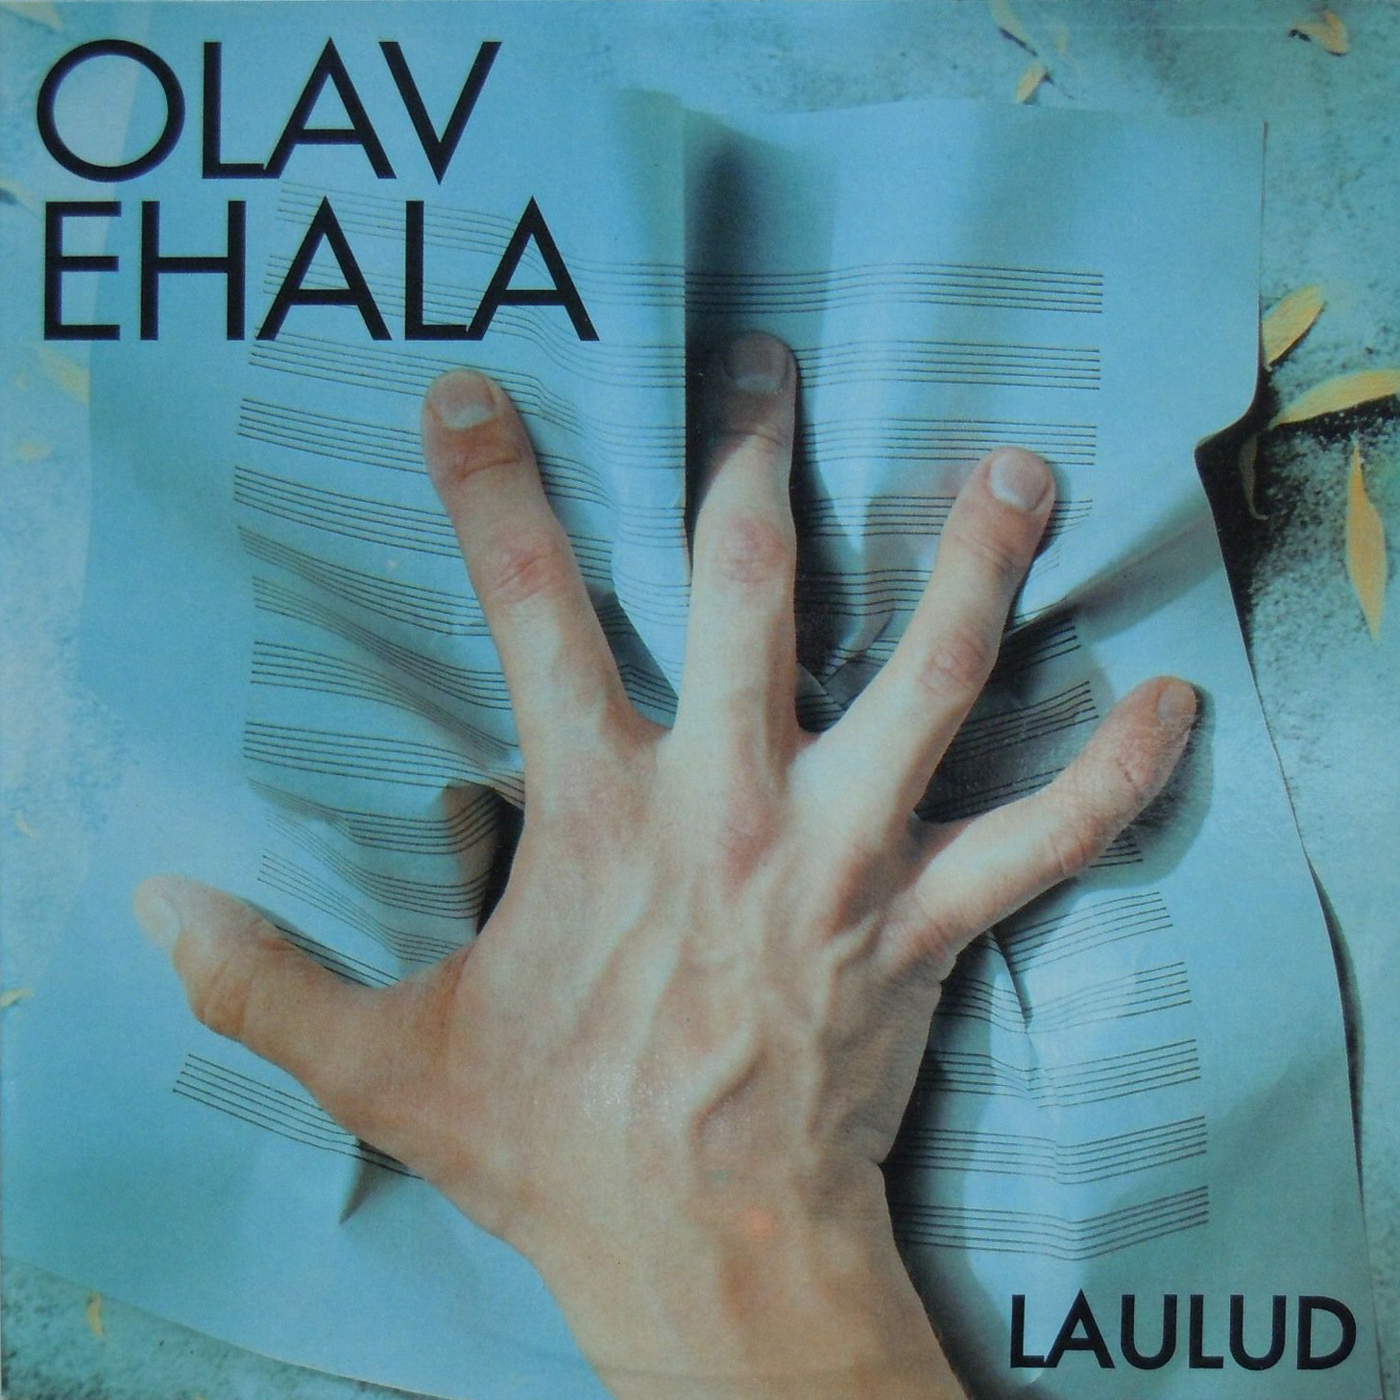 Olav EHALA (Олав Эхала) "Laulud (Песни)" (на эстонском языке)